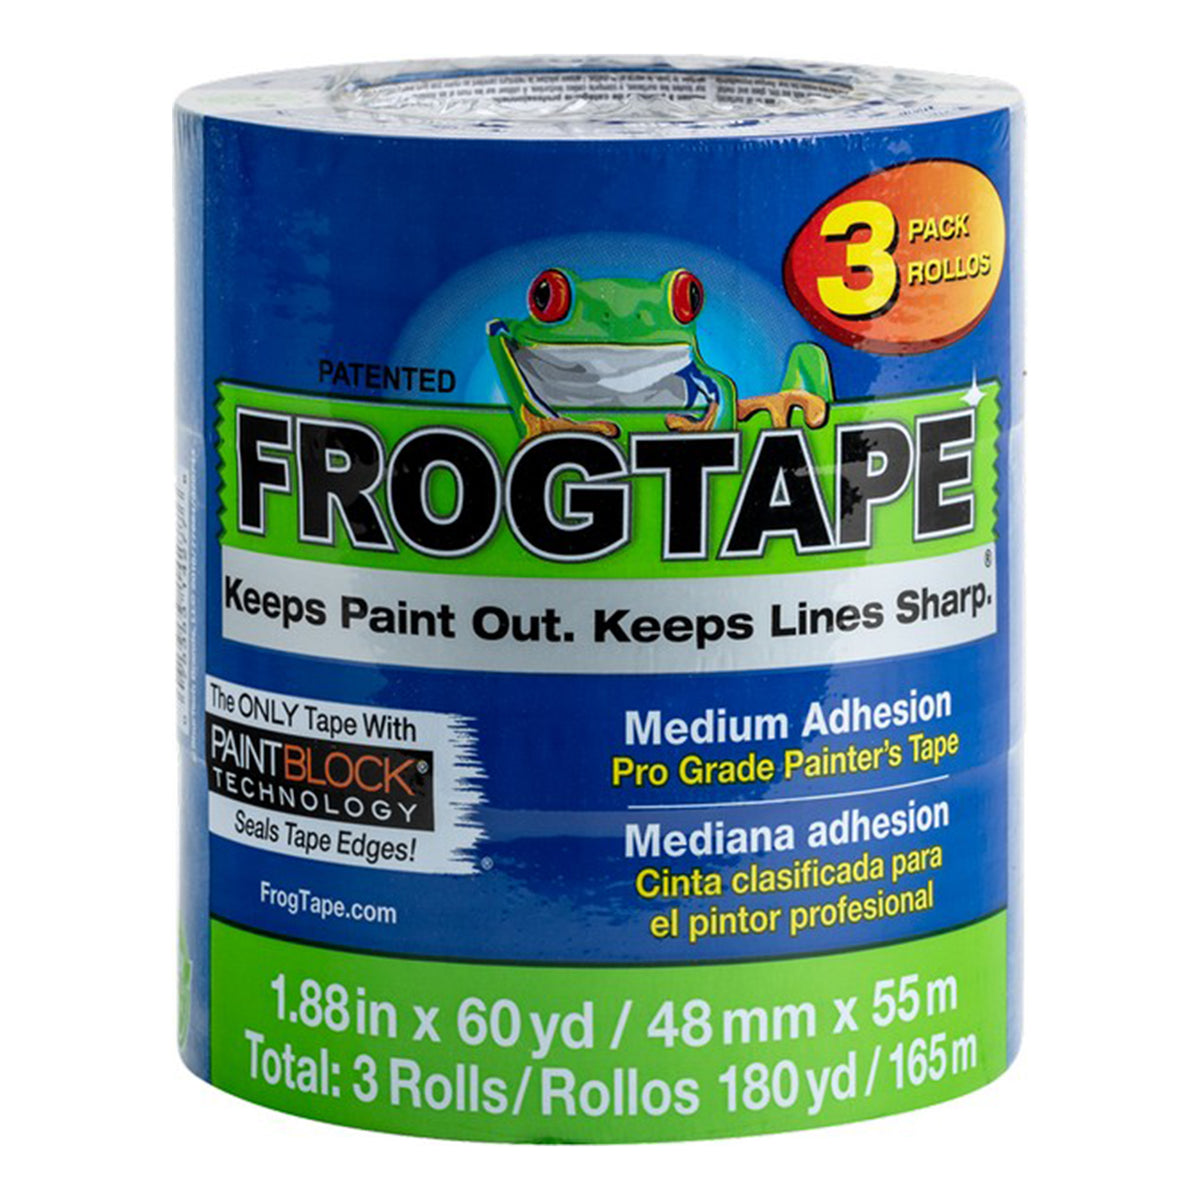 Shurtape Frog Tape 250 Light Blue Masking Tape, 72 mm Width x 55 m Length